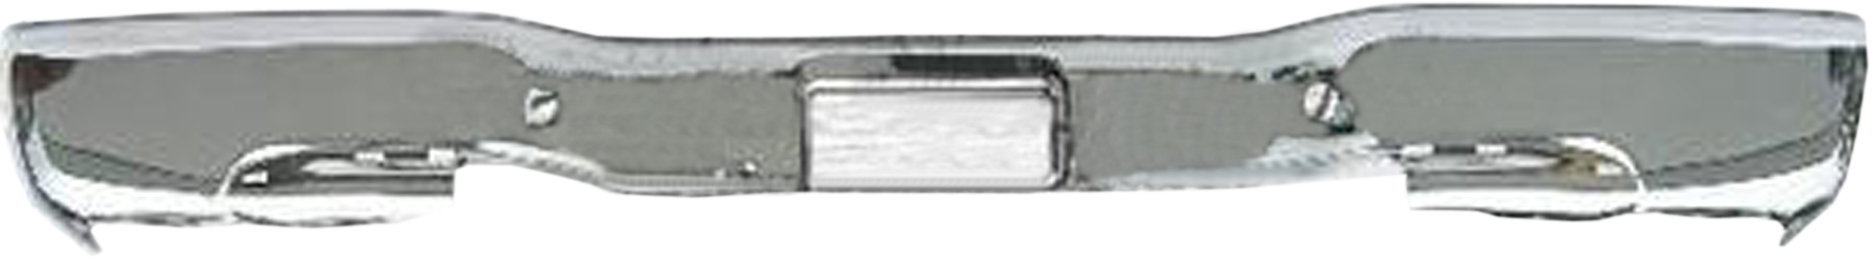 Aftermarket METAL REAR BUMPERS for GMC - SIERRA 2500 HD, SIERRA 2500 HD,01-06,Rear bumper face bar